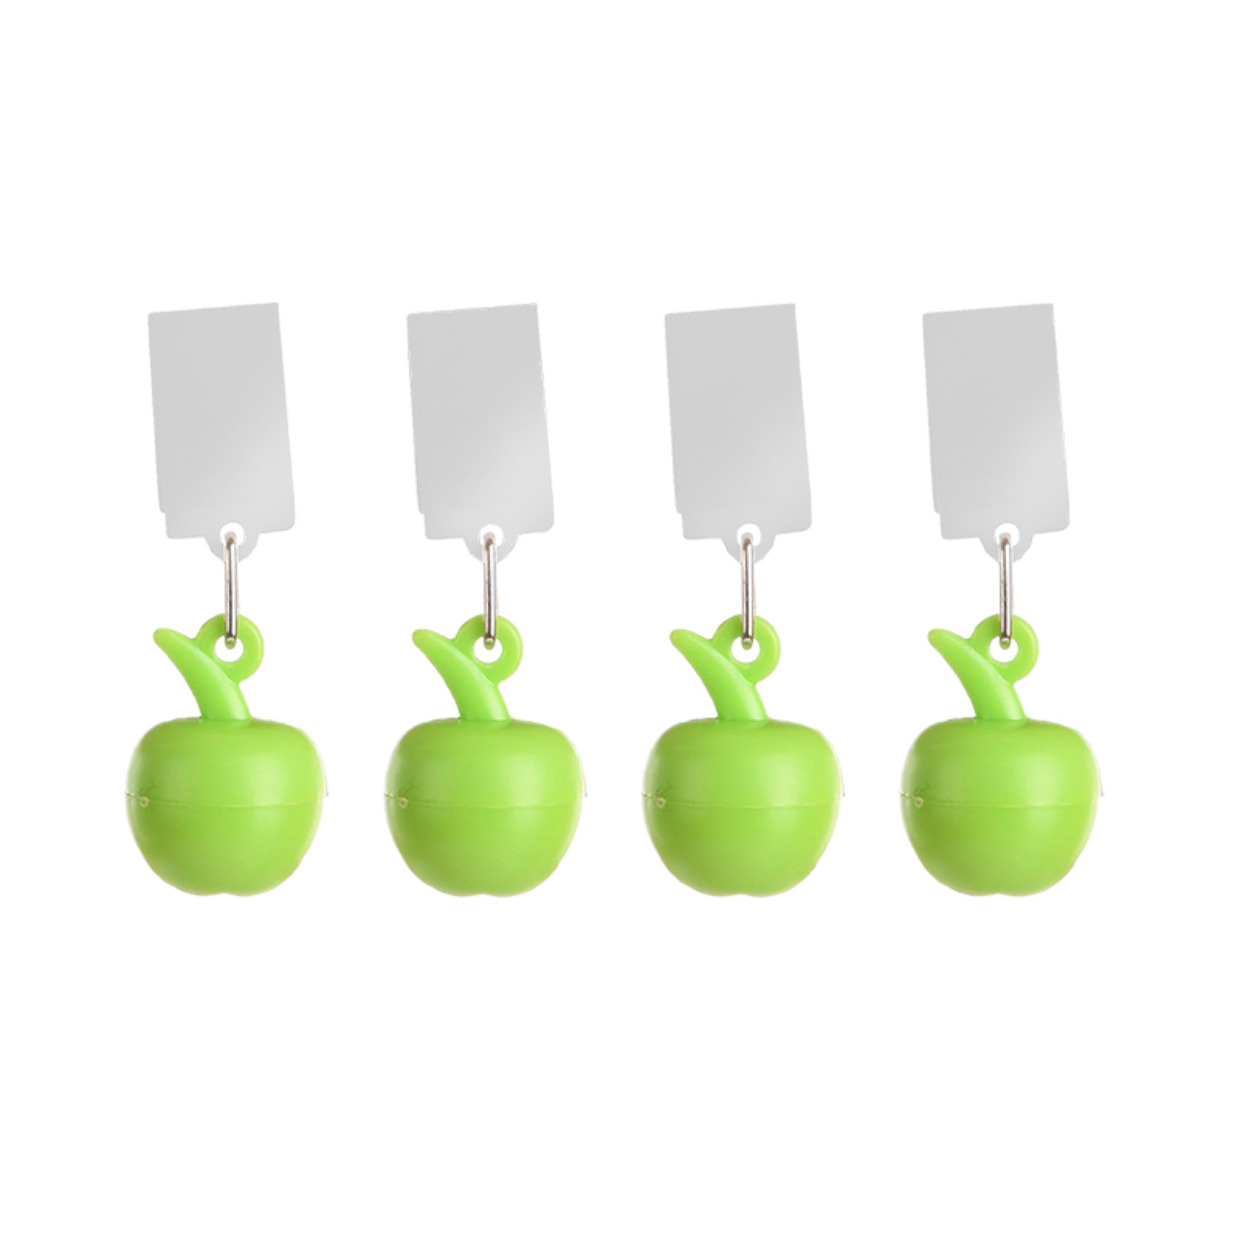 Tafelkleedgewichten appels - 4x - groen - kunststof - voor tafelkleden en tafelzeilen -